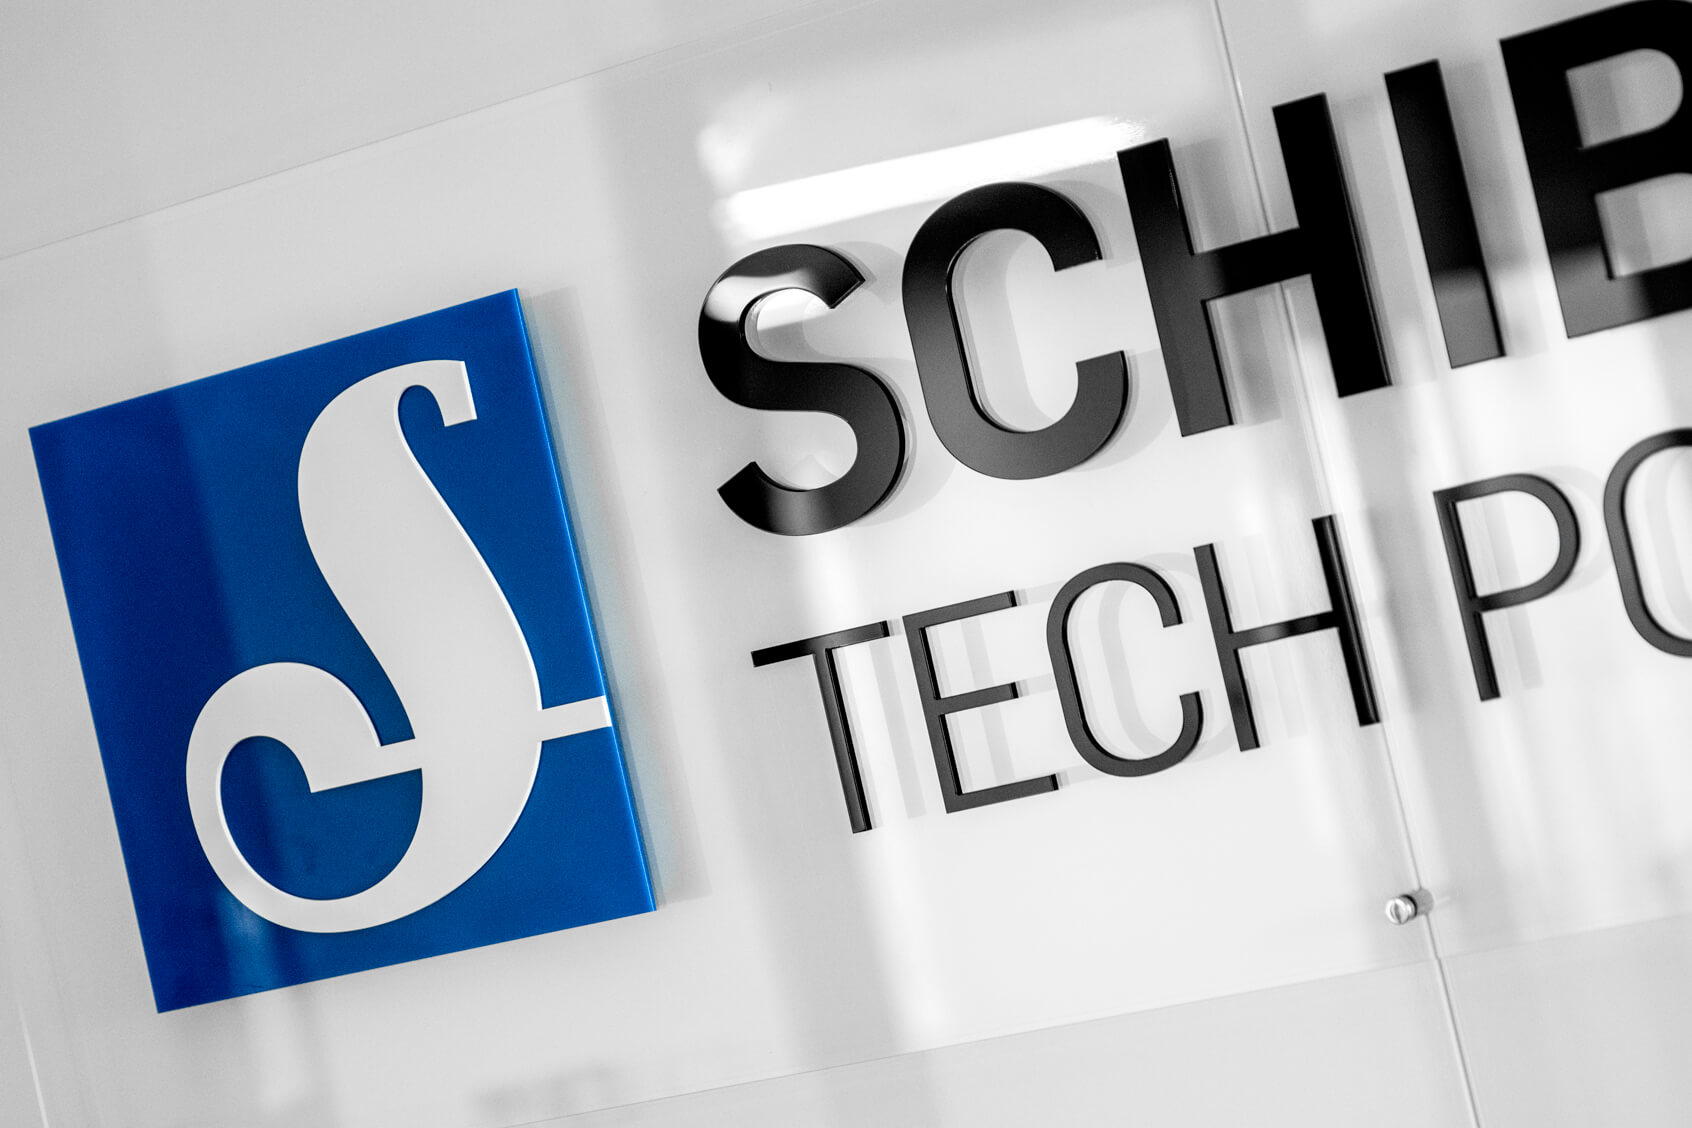 Schibsted Tech Pologne  - Schibsted Tech Poland - logo et lettres en 3D sur support plexiglas montés sur des entretoises dans la zone de réception.